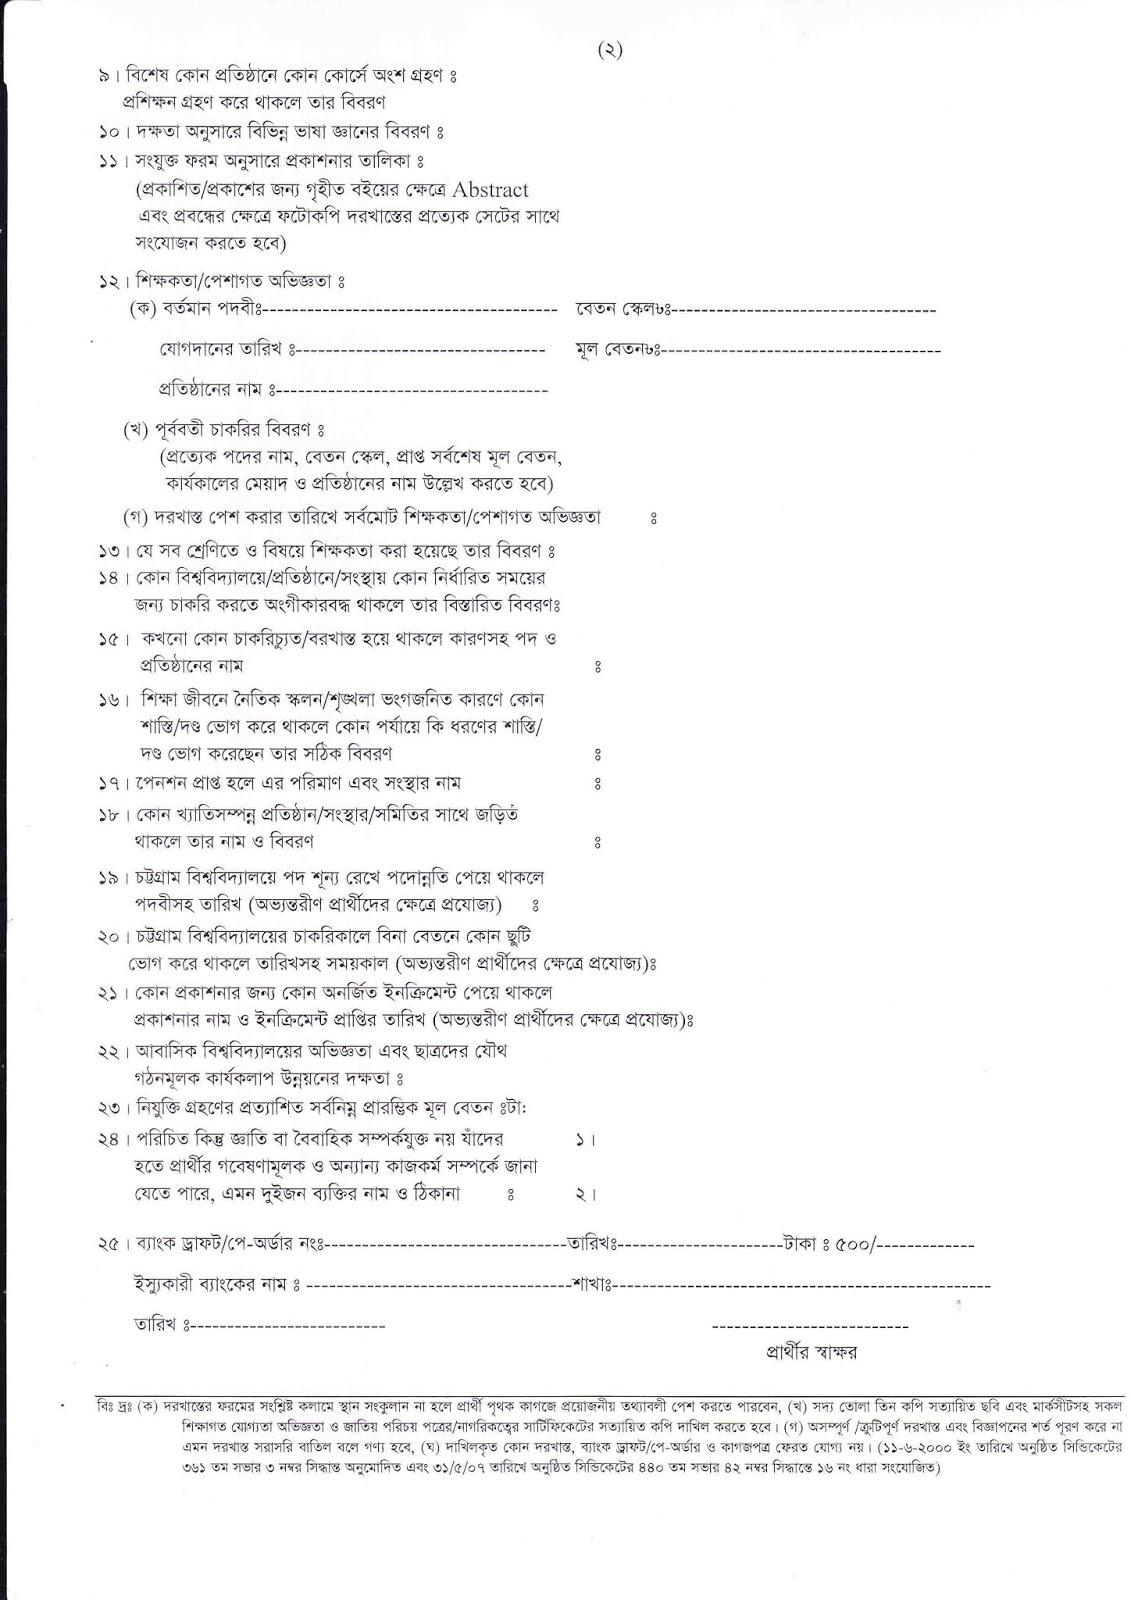 University of Chittagong (CU) Teacher Recruitment Application Form